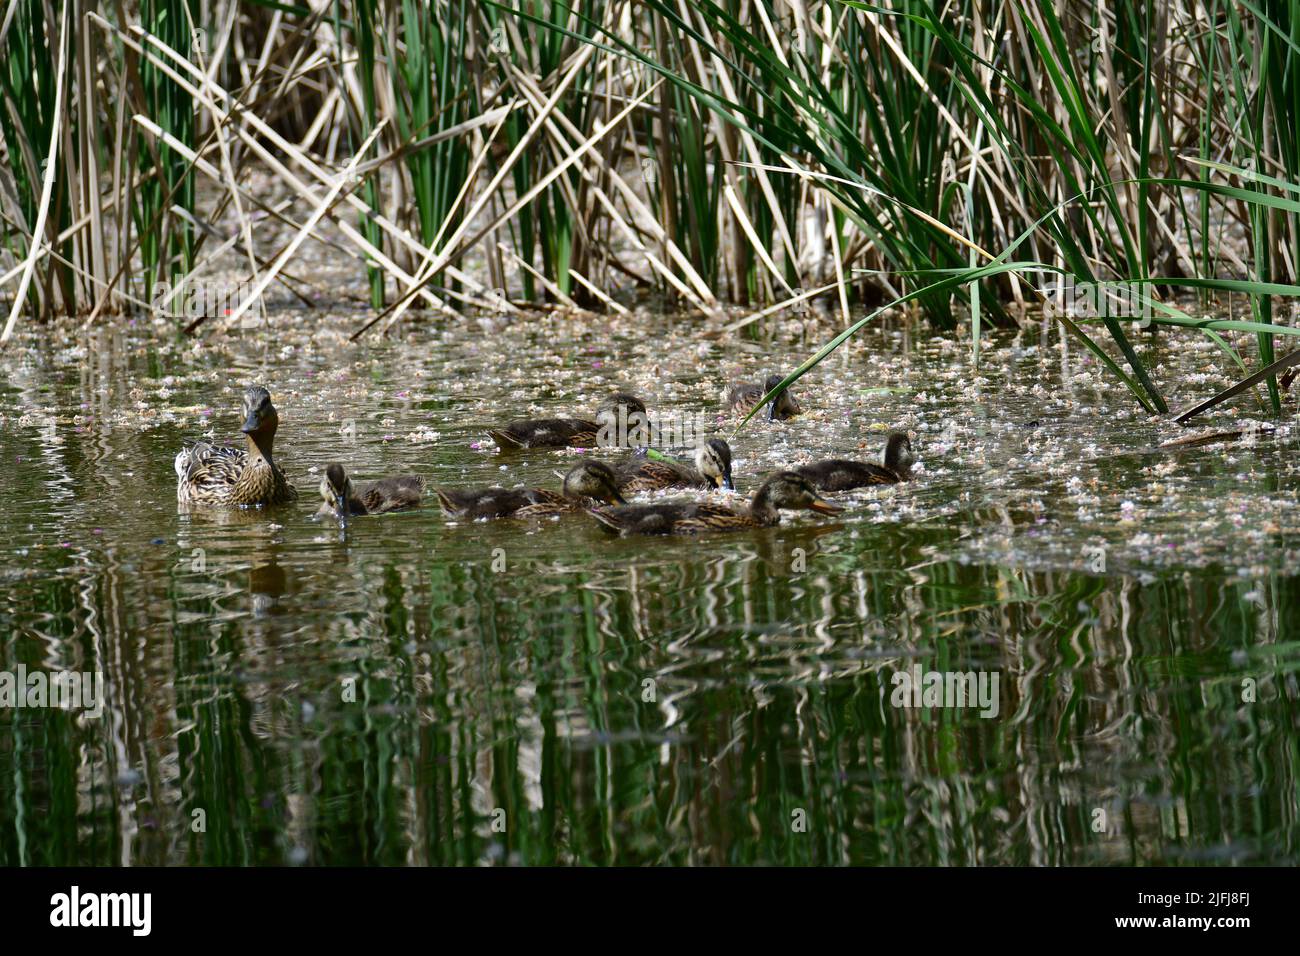 Mallardenes Weibchen mit kleinen Enten, die im Wasser auf dem Teich schwimmen. Stockente mit Brut. Kleine Enten mit Mama Ente Stockfoto